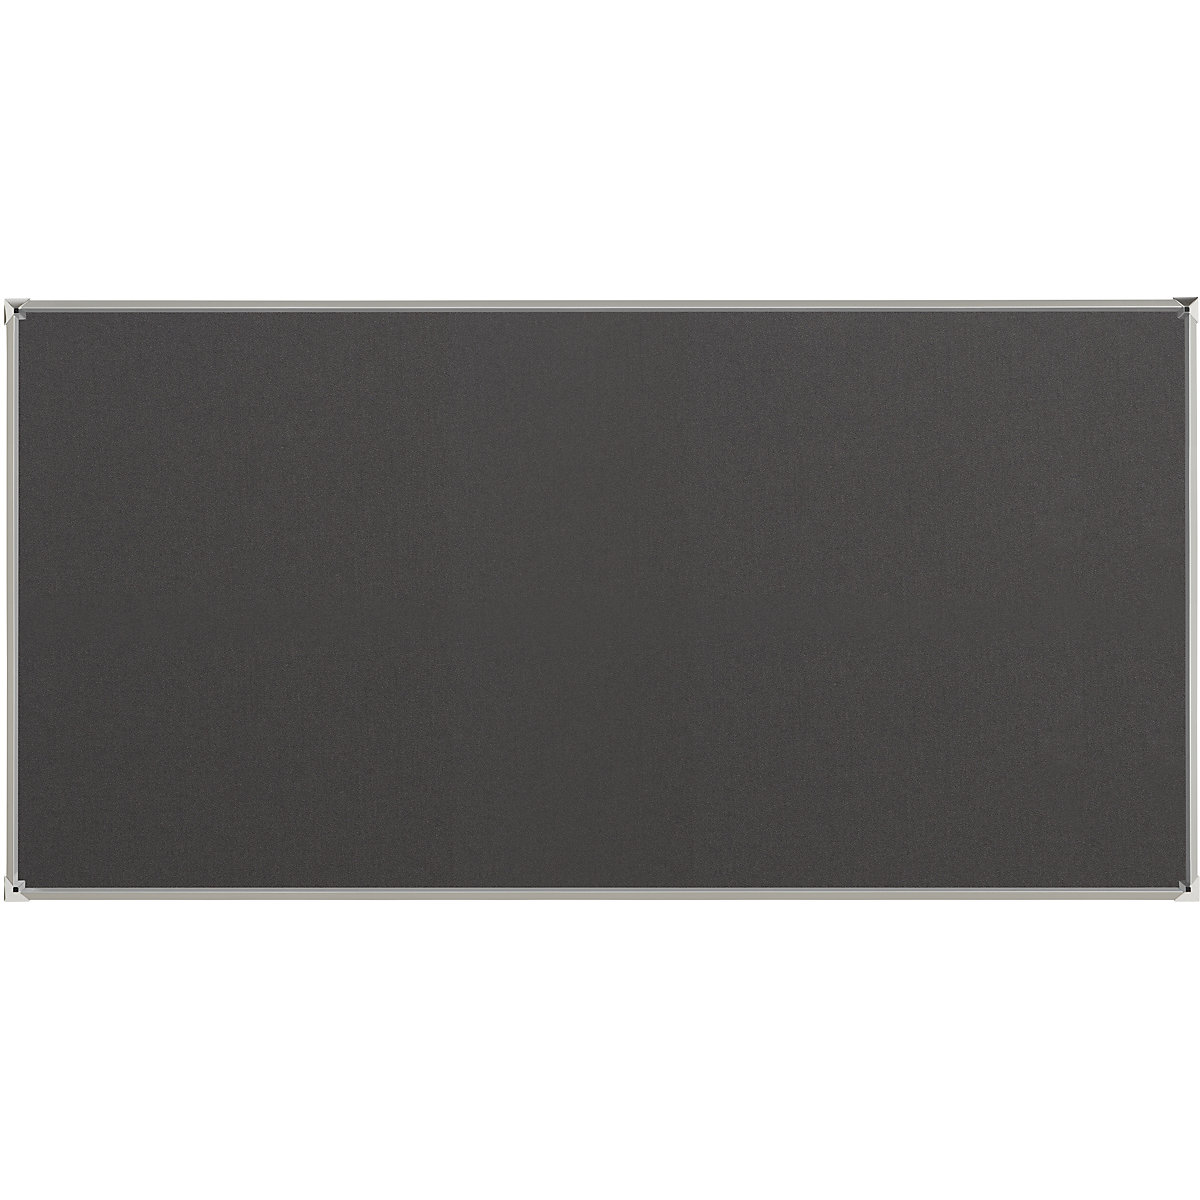 Oglasna ploča s aluminijskim okvirom – eurokraft pro, presvlaka od tkanine, u sivoj boji, ŠxV 2400 x 1200 mm-5